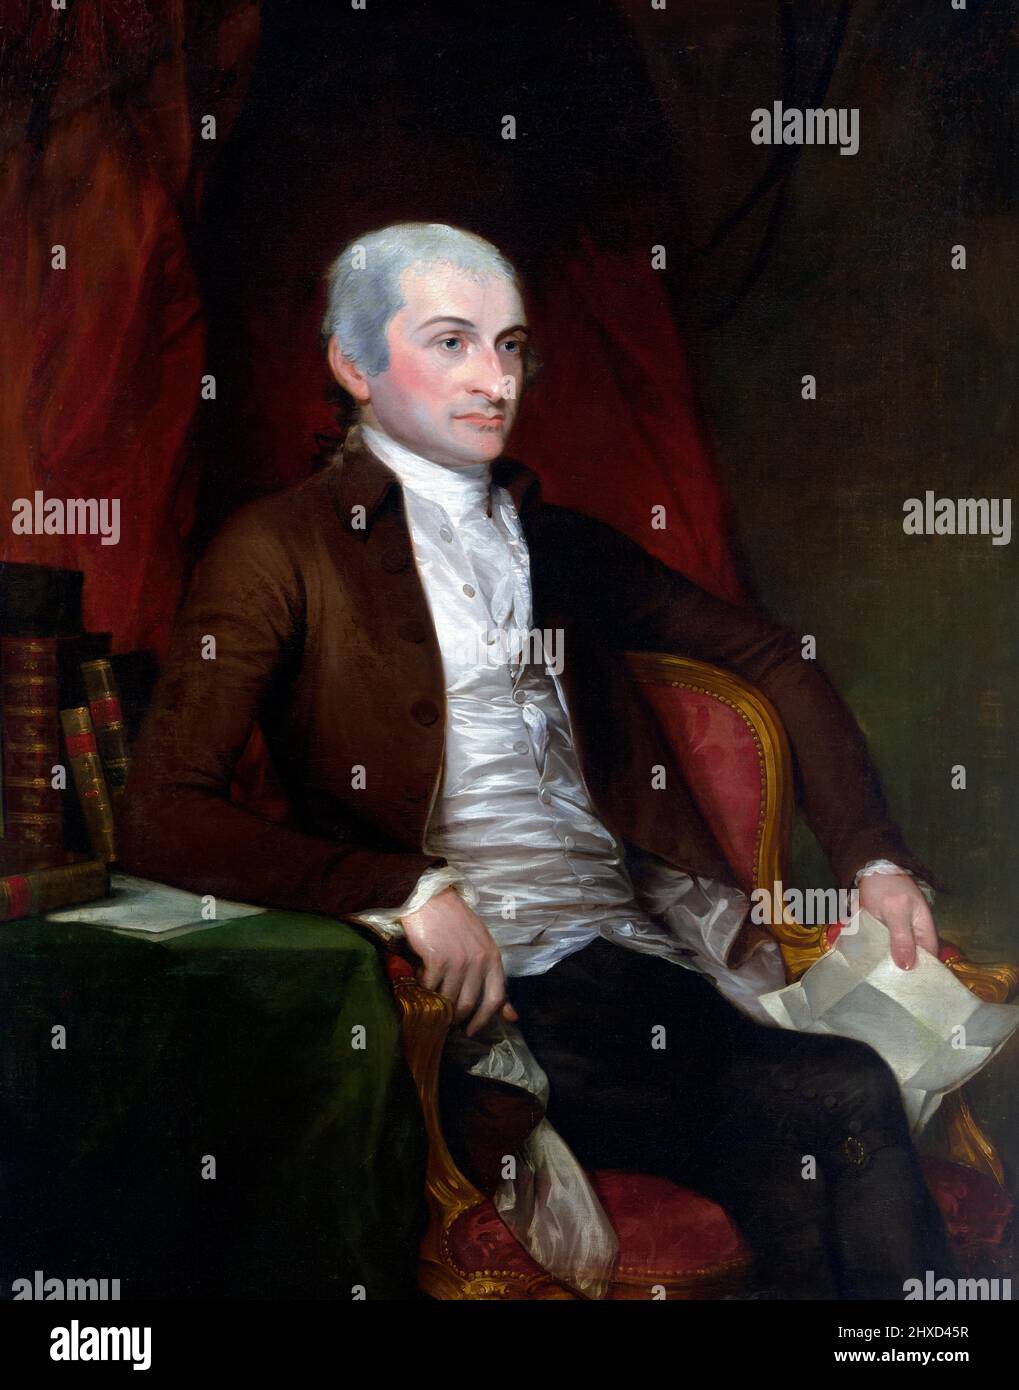 Porträt des ersten Oberjustizers der Vereinigten Staaten, John Jay (1745-1829) von Gilbert Stuart und John Trumbull, Öl auf Leinwand, begonnen 1784 beendet 1818 Stockfoto